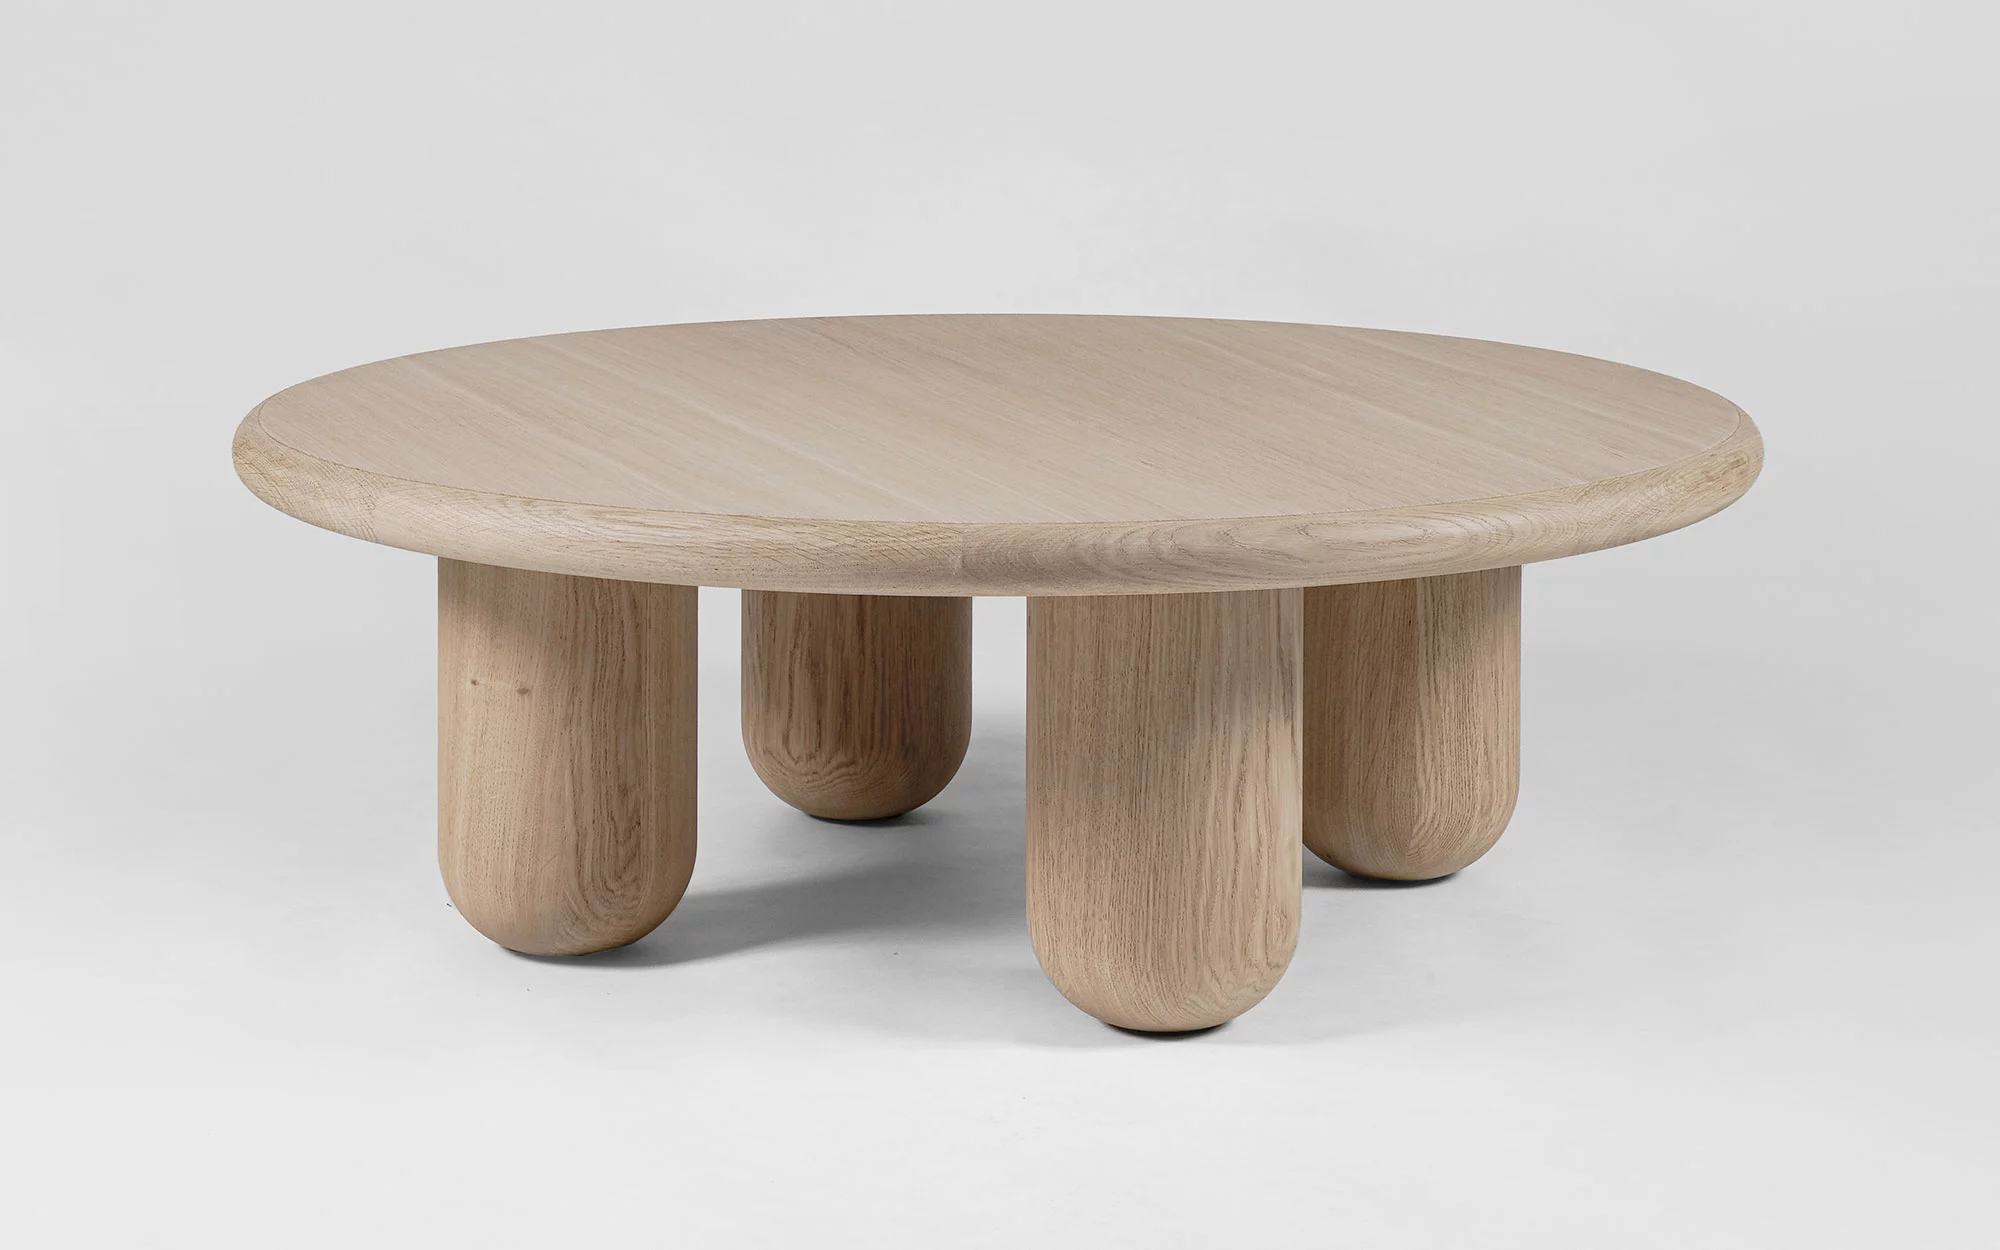 Organism coffee table - Jaime Hayon - Vase - Galerie kreo